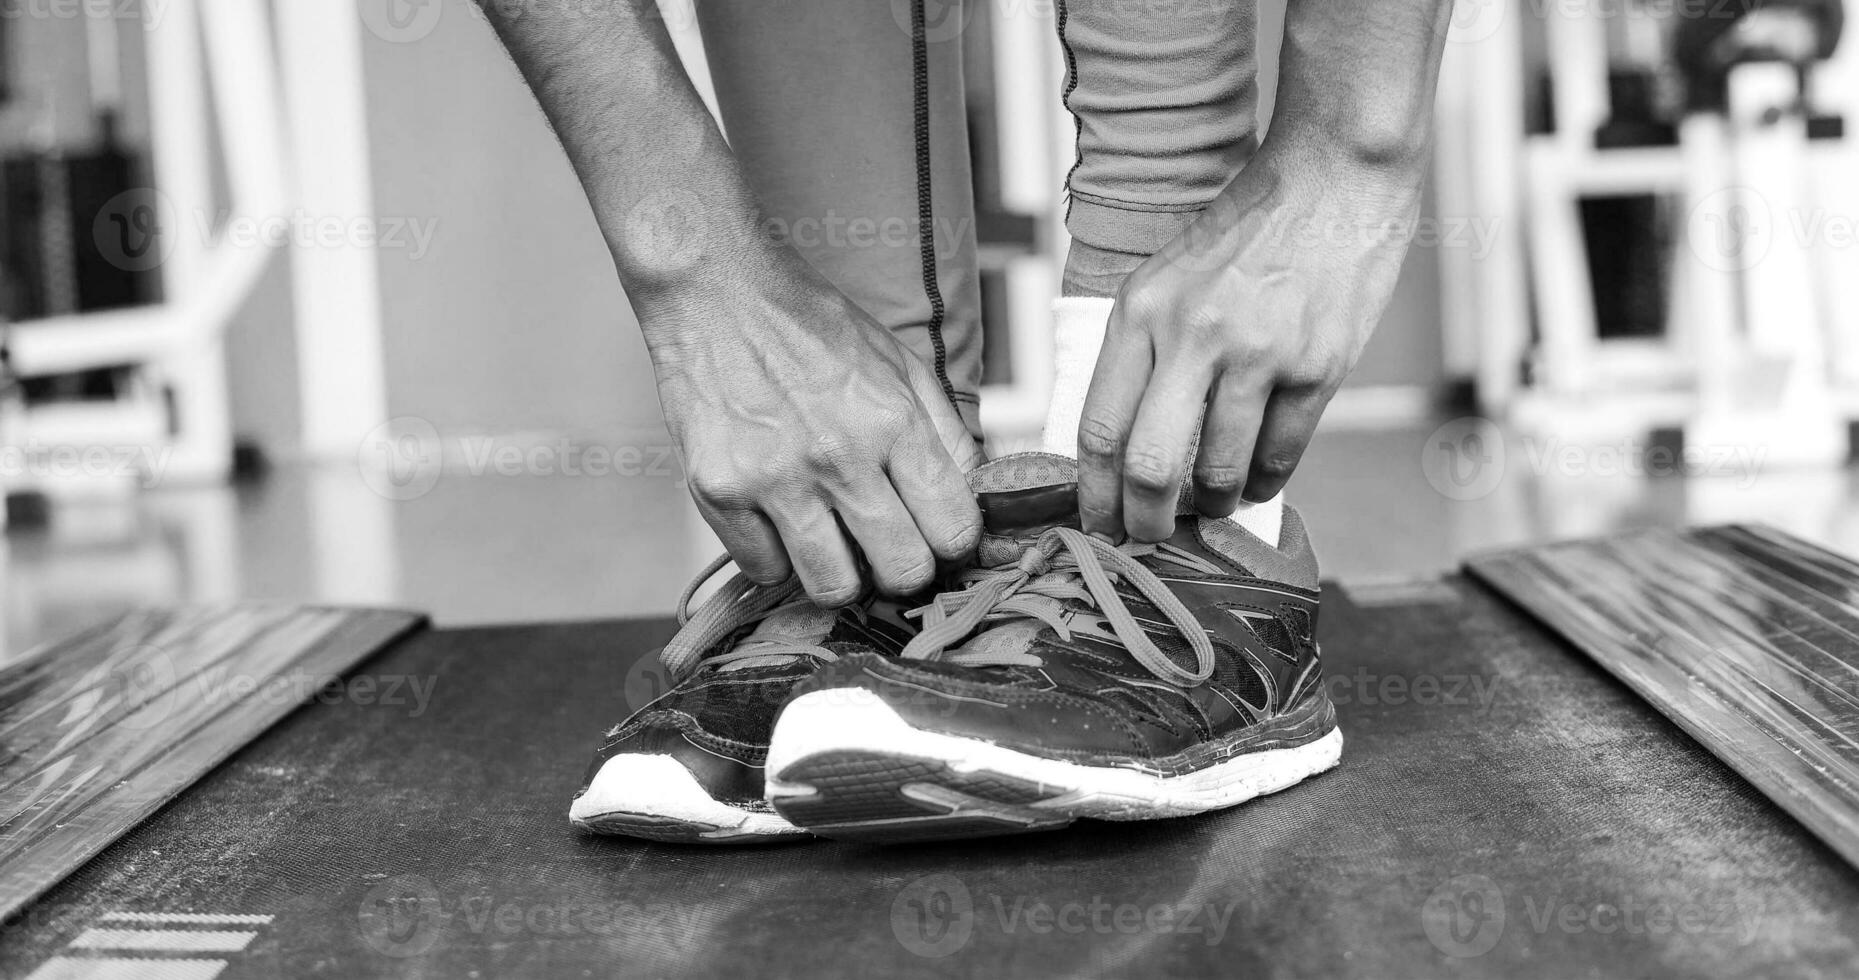 pies femeninos negros en zapatillas de deporte foto